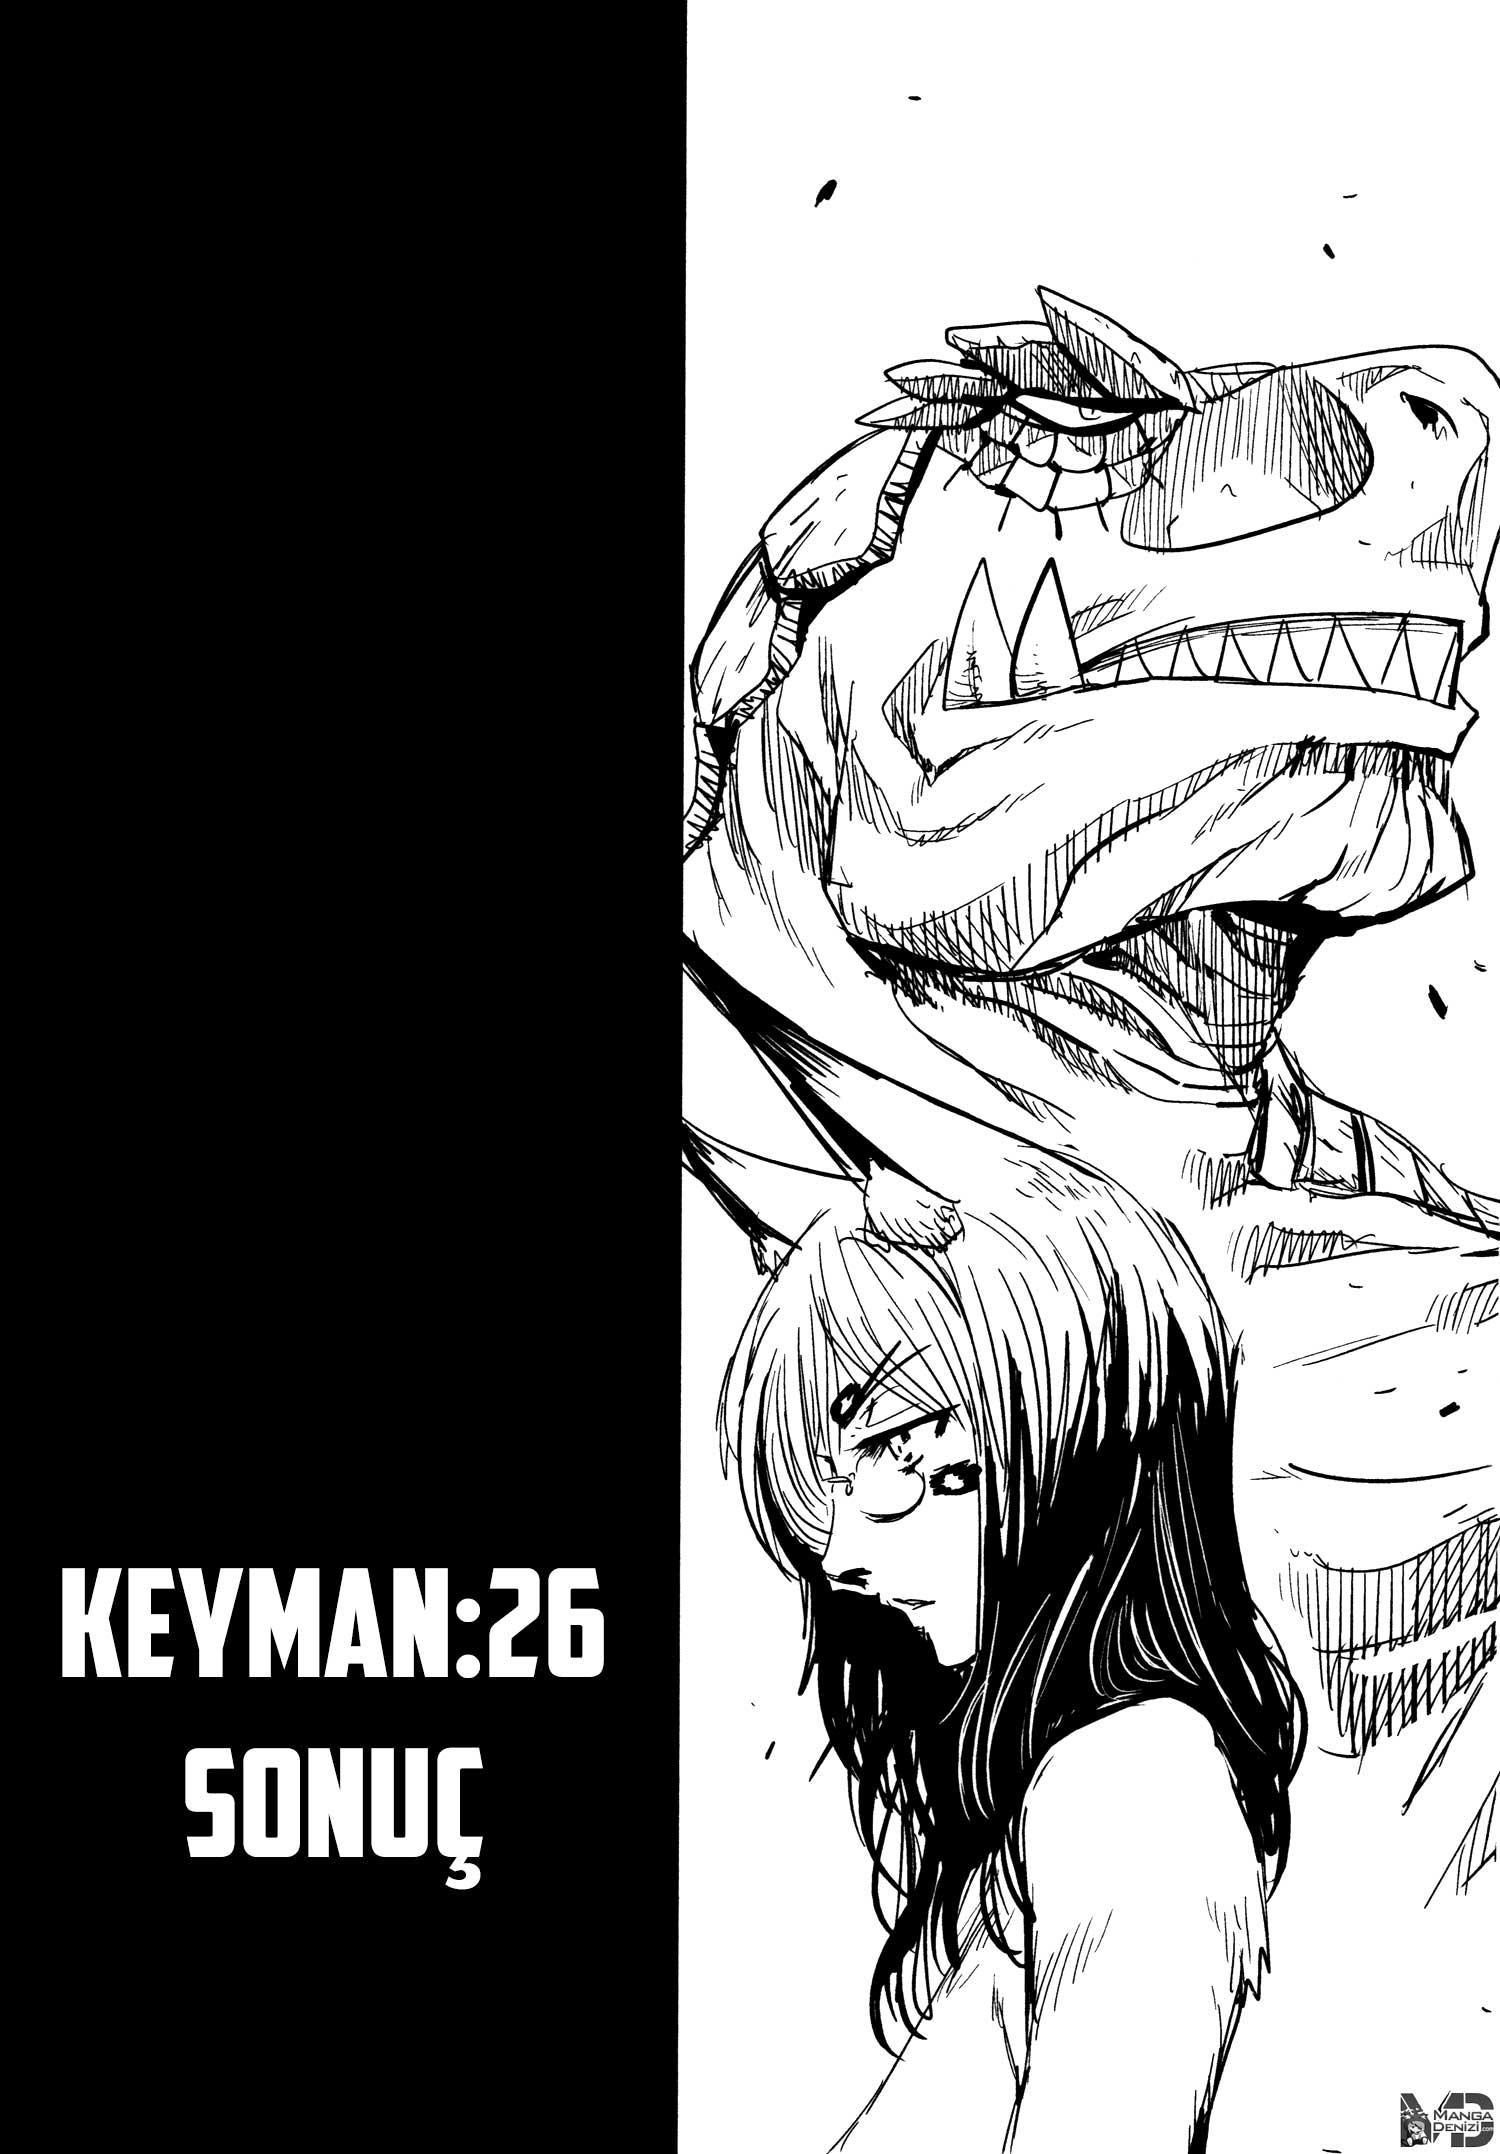 Keyman: The Hand of Judgement mangasının 26 bölümünün 4. sayfasını okuyorsunuz.